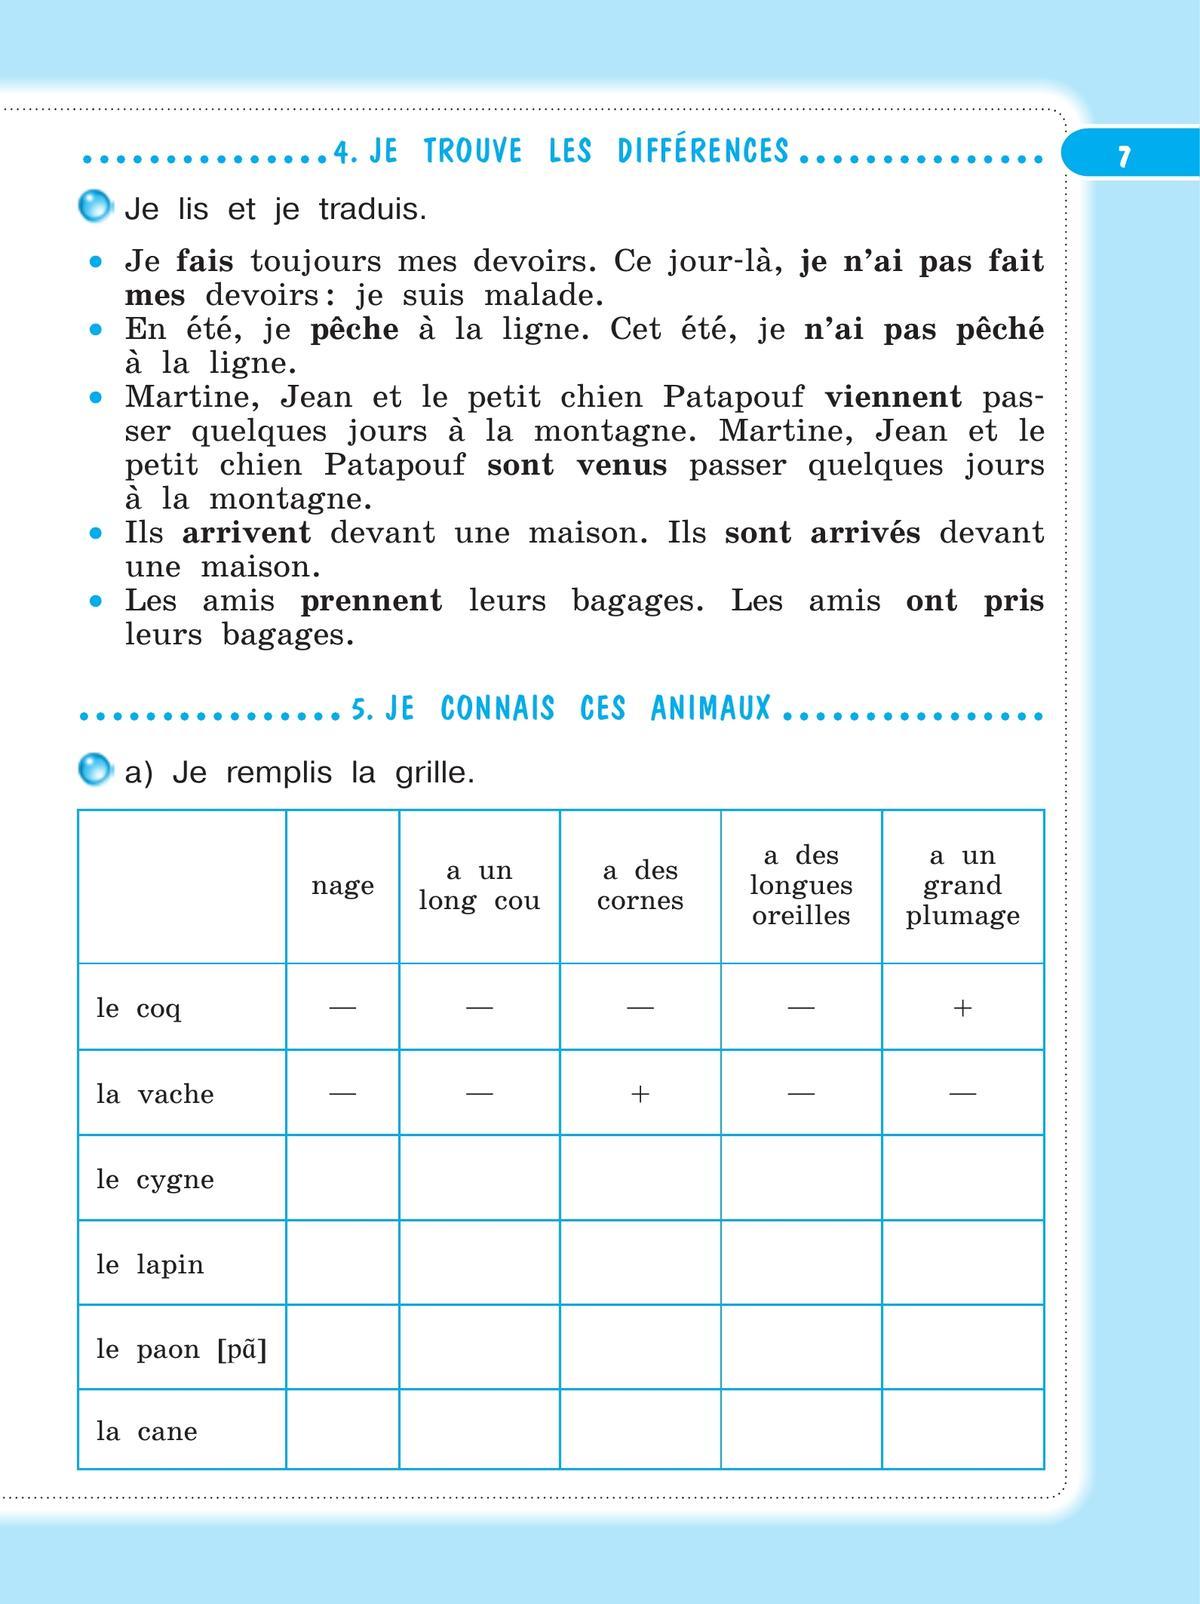 Французский язык. Рабочая тетрадь. 4 класс 10